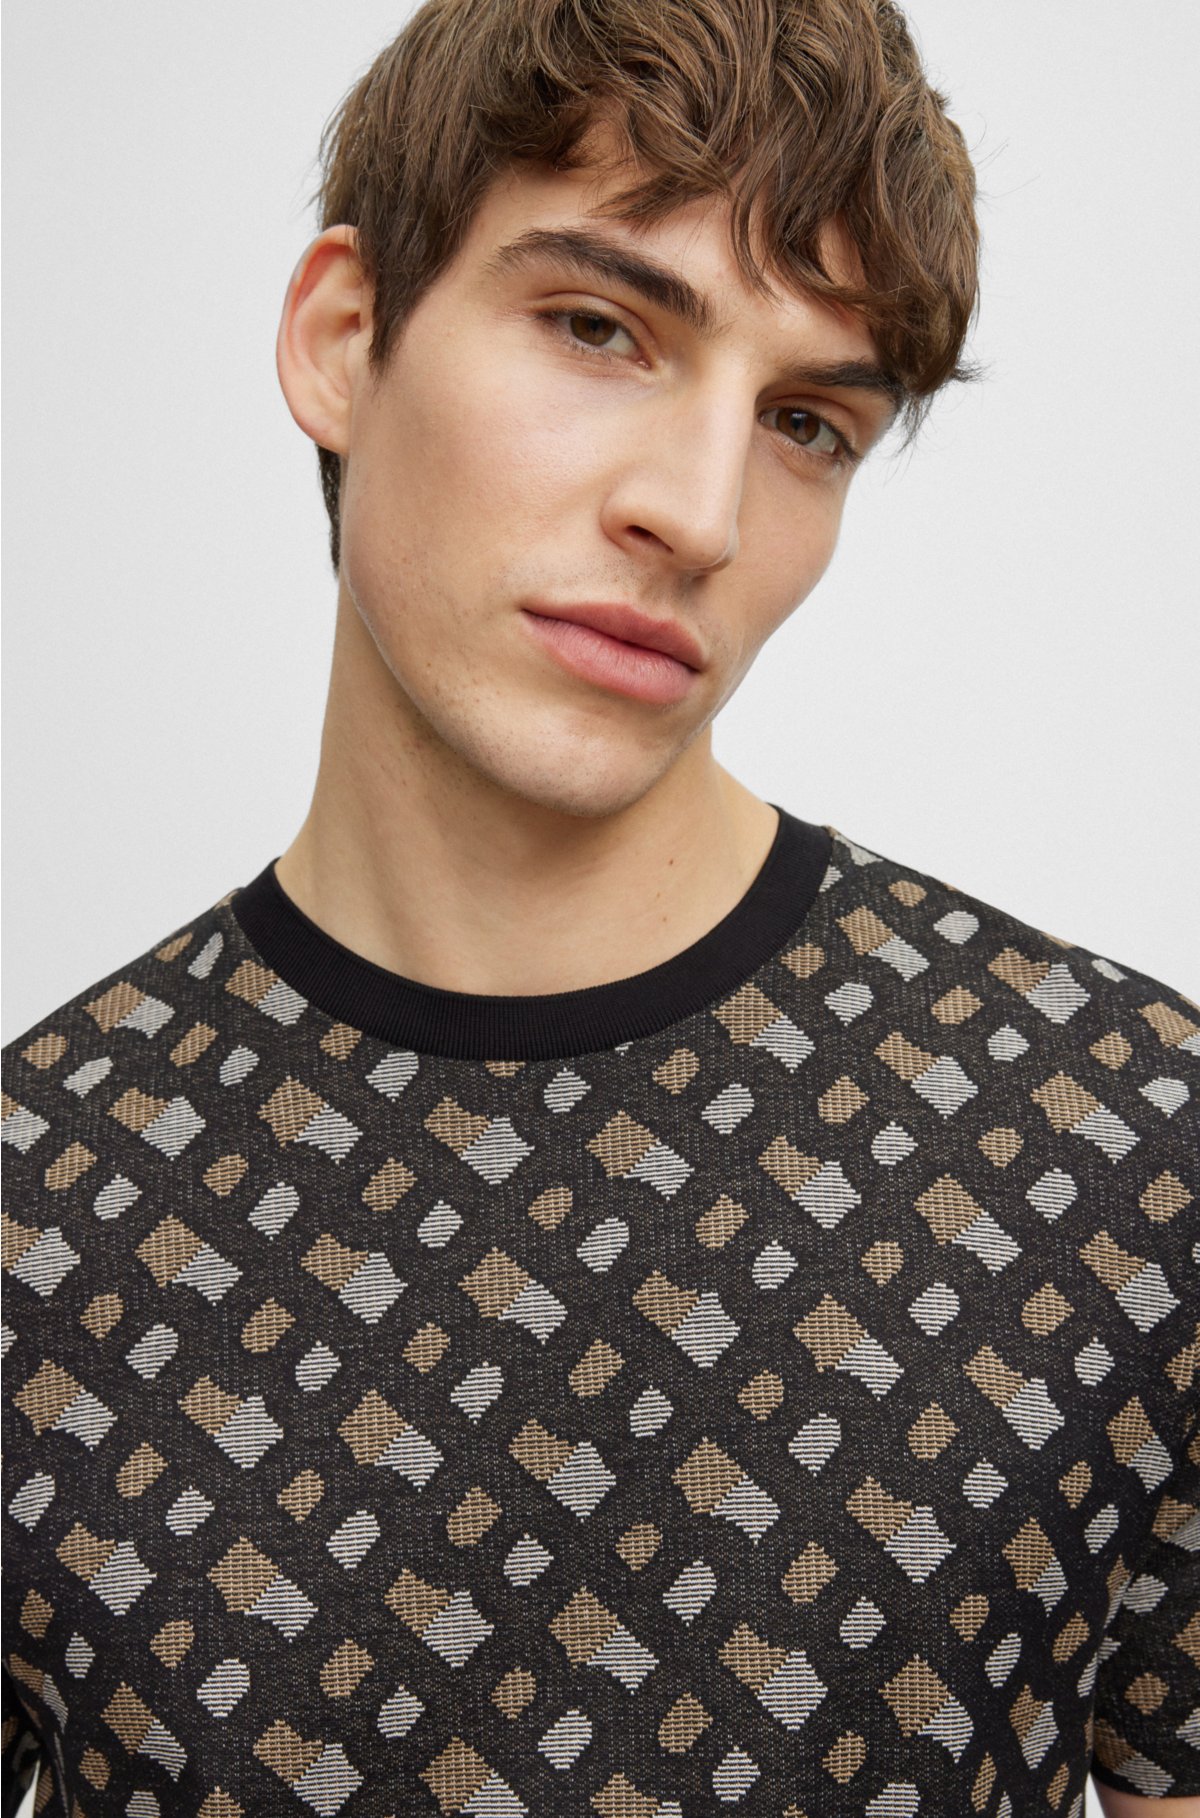 Featuring: Louis Vuitton Monogram Jacquard Sweatshirt Sz S (Fits